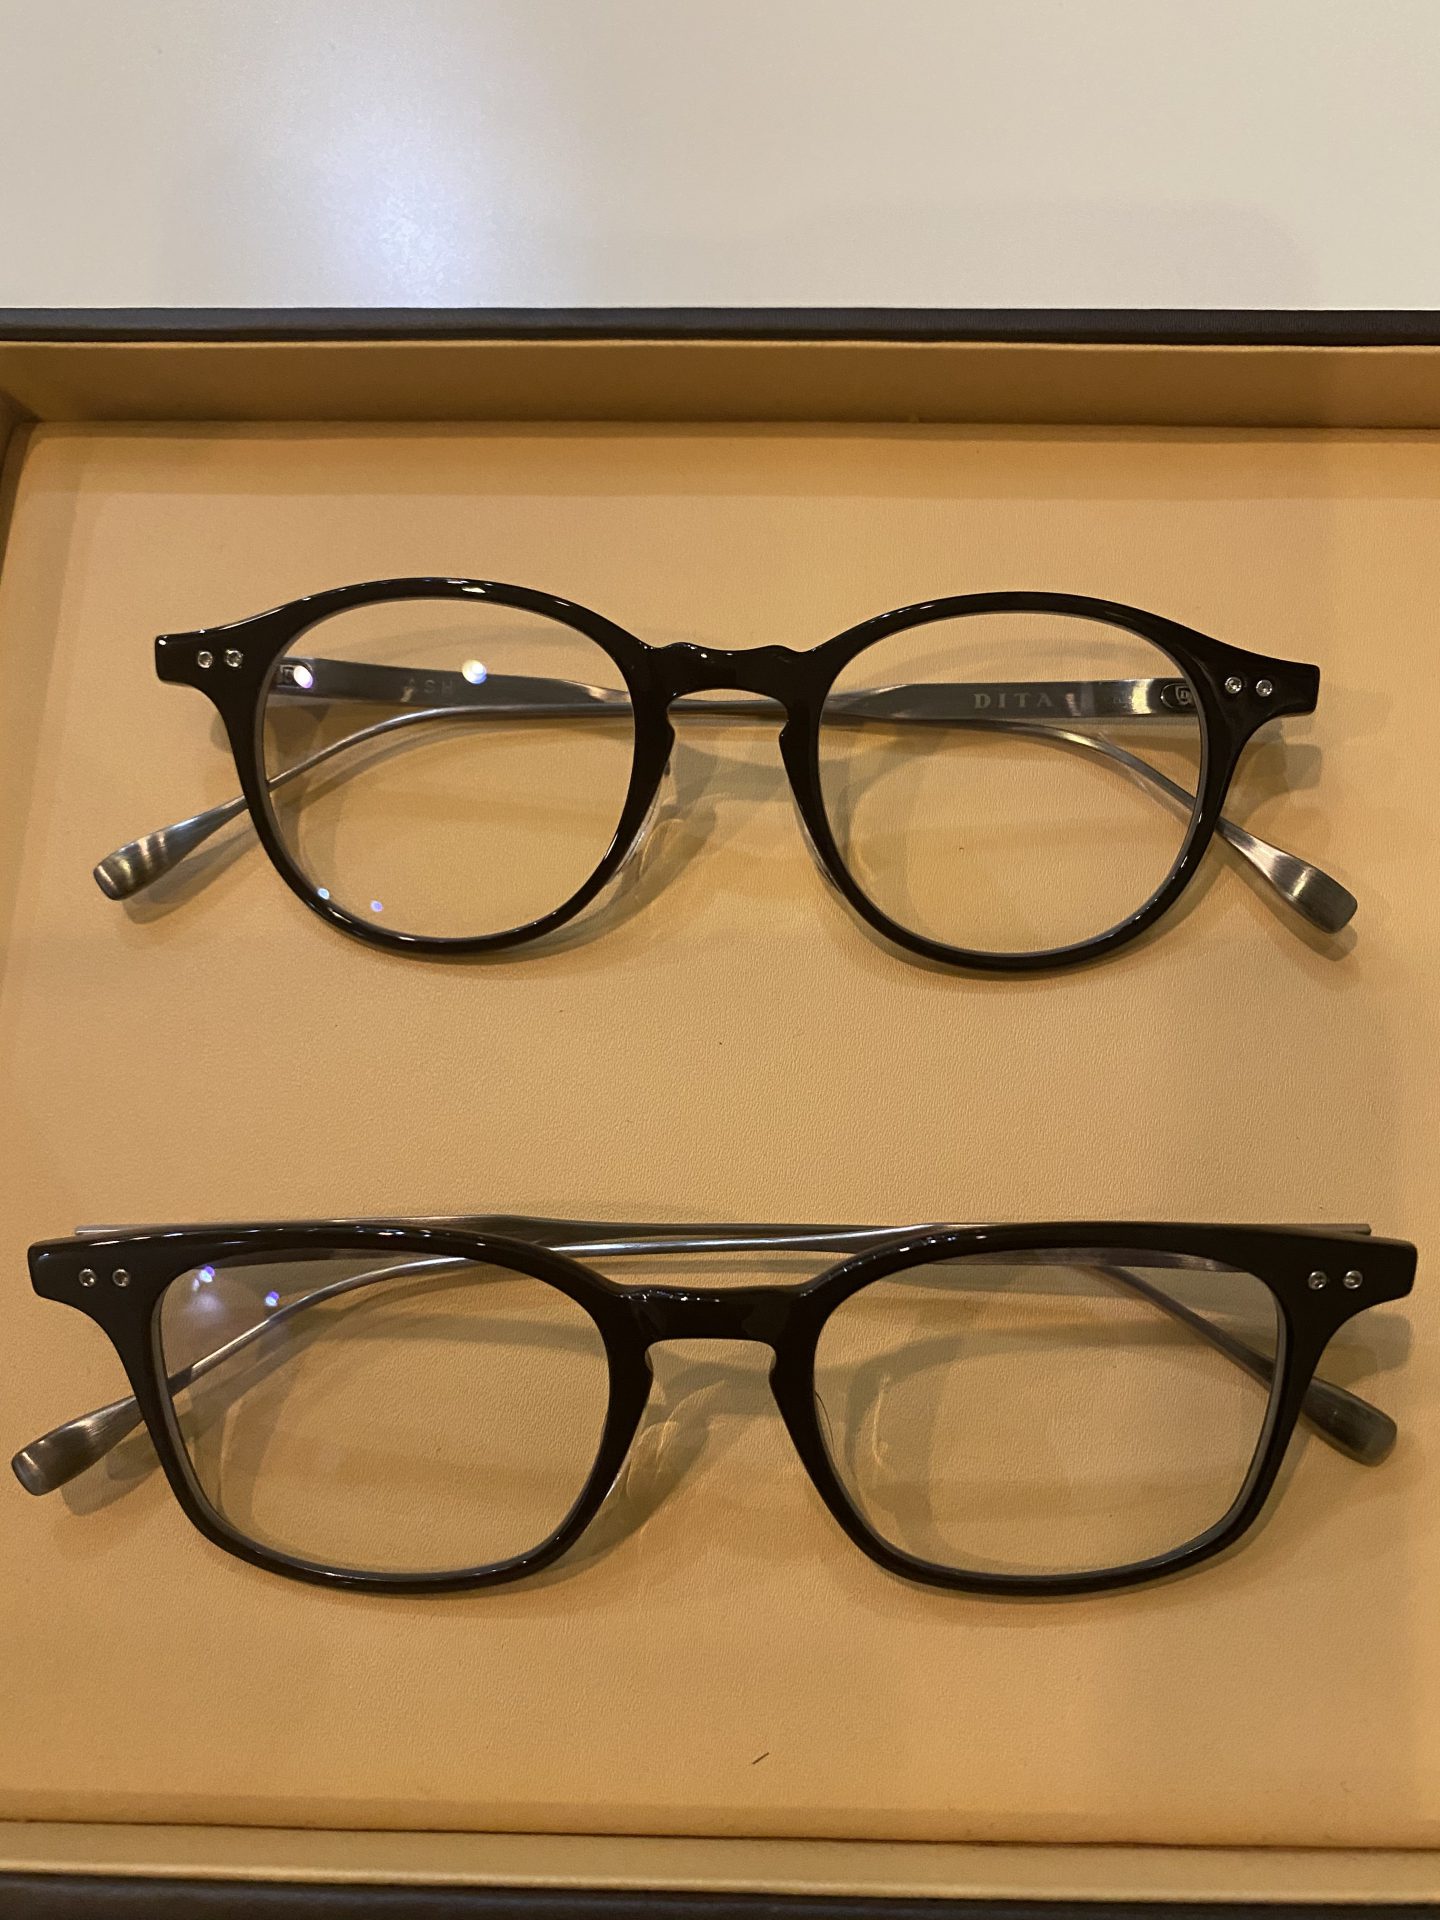 DITA 綺麗の眼鏡 | private - 名古屋栄の海外ブランドメガネ・サングラス専門店